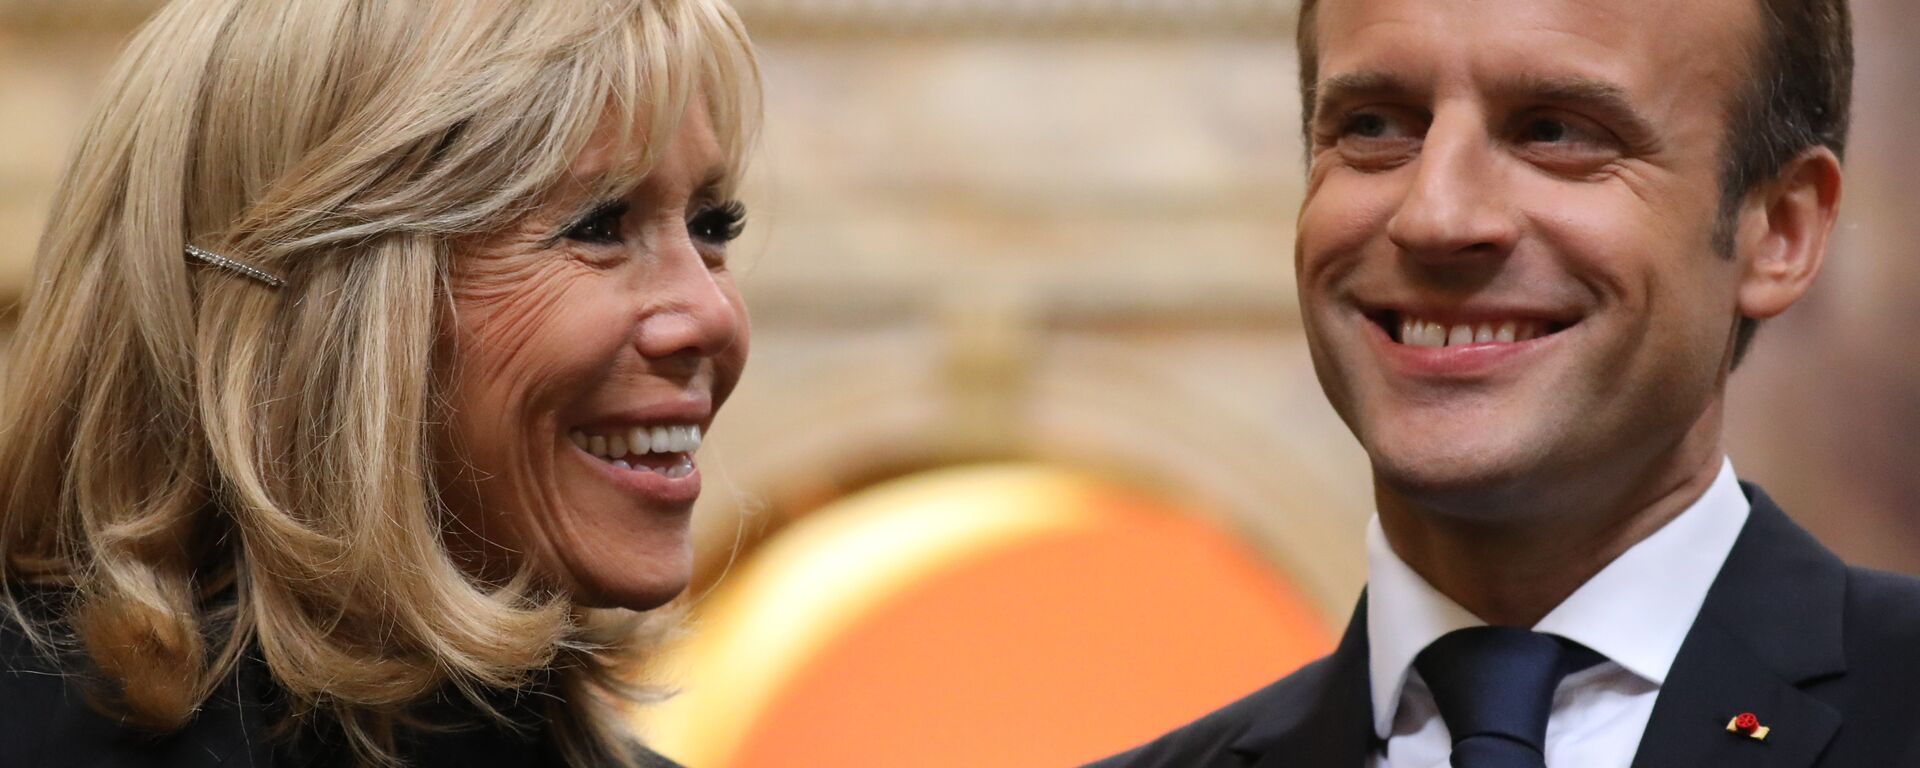 Fransa Cumhurbaşkanı Emmanuel Macron ile kendisinden 24 yaş büyük eşi Brigitte Macron - Sputnik Türkiye, 1920, 02.09.2019